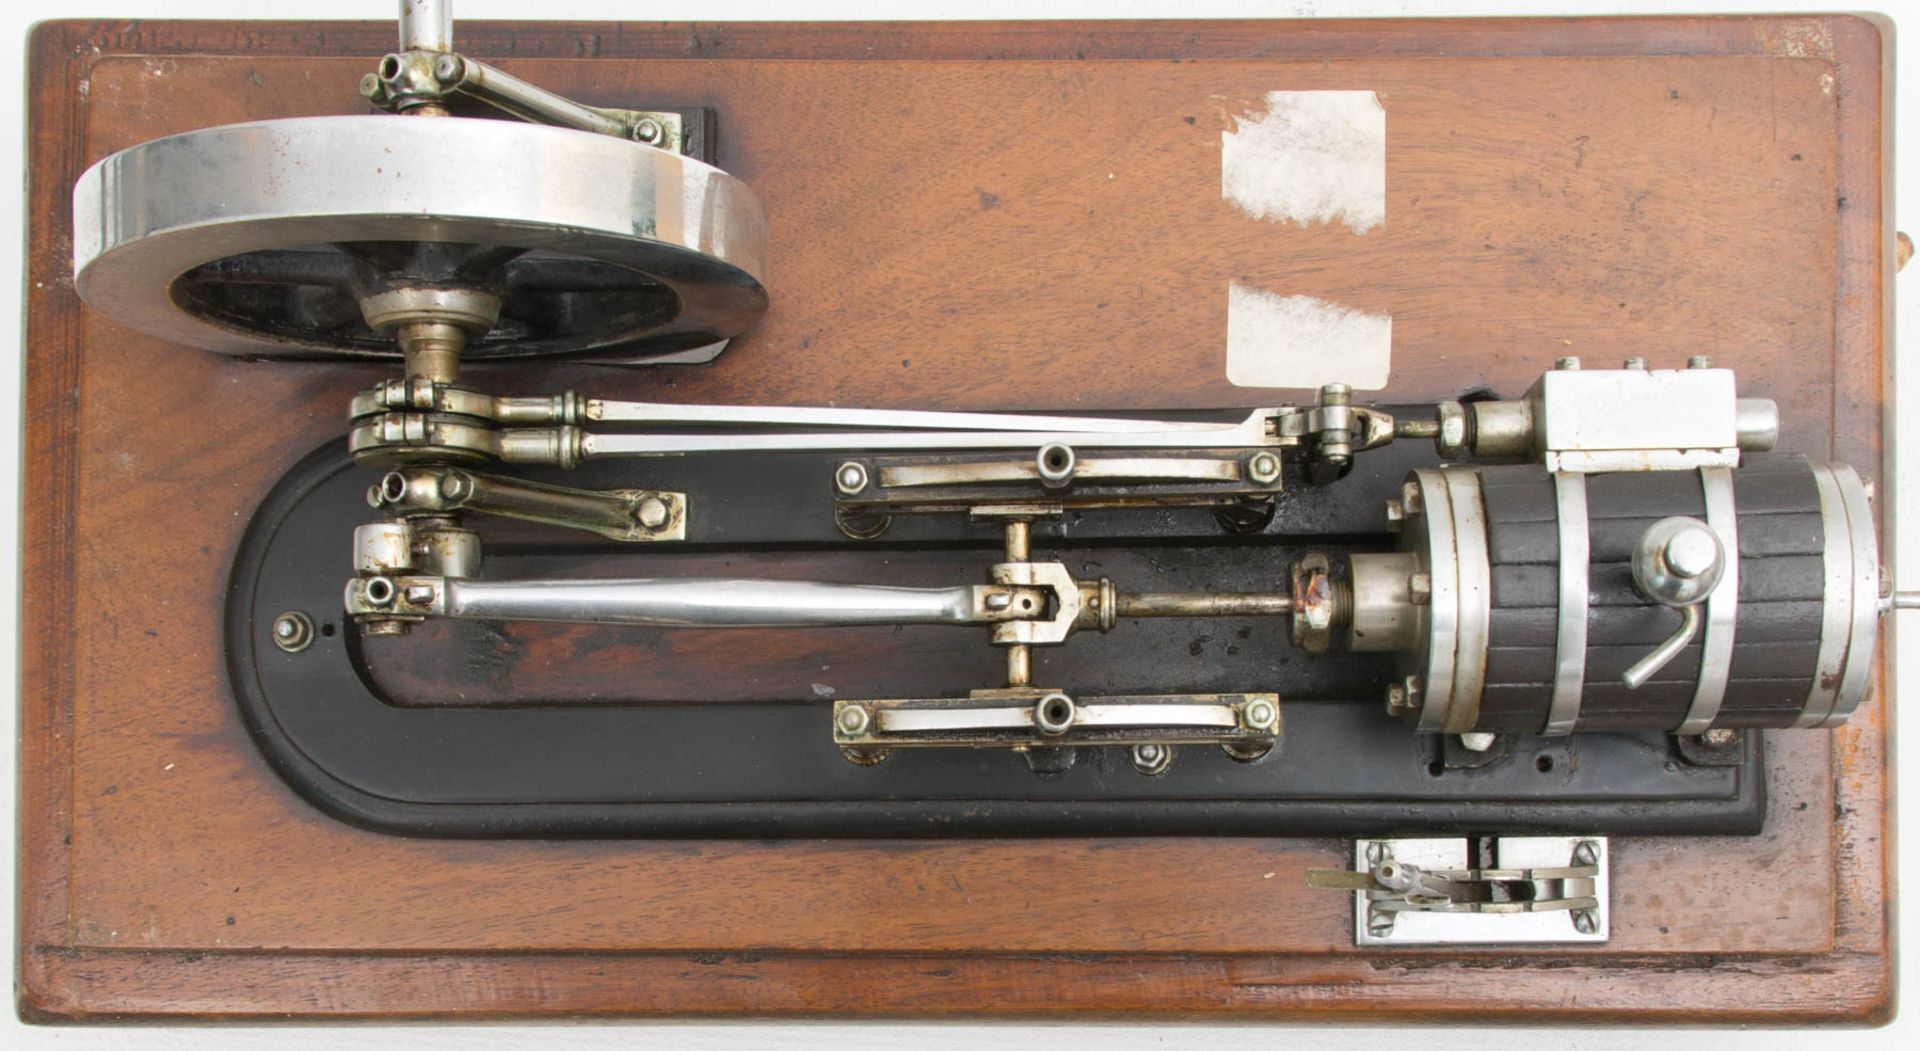 Modell Dampfmaschine in Holzkasten mit Glasscheiben.Kleine Modell-Dampfmaschine in Hol - Bild 4 aus 7